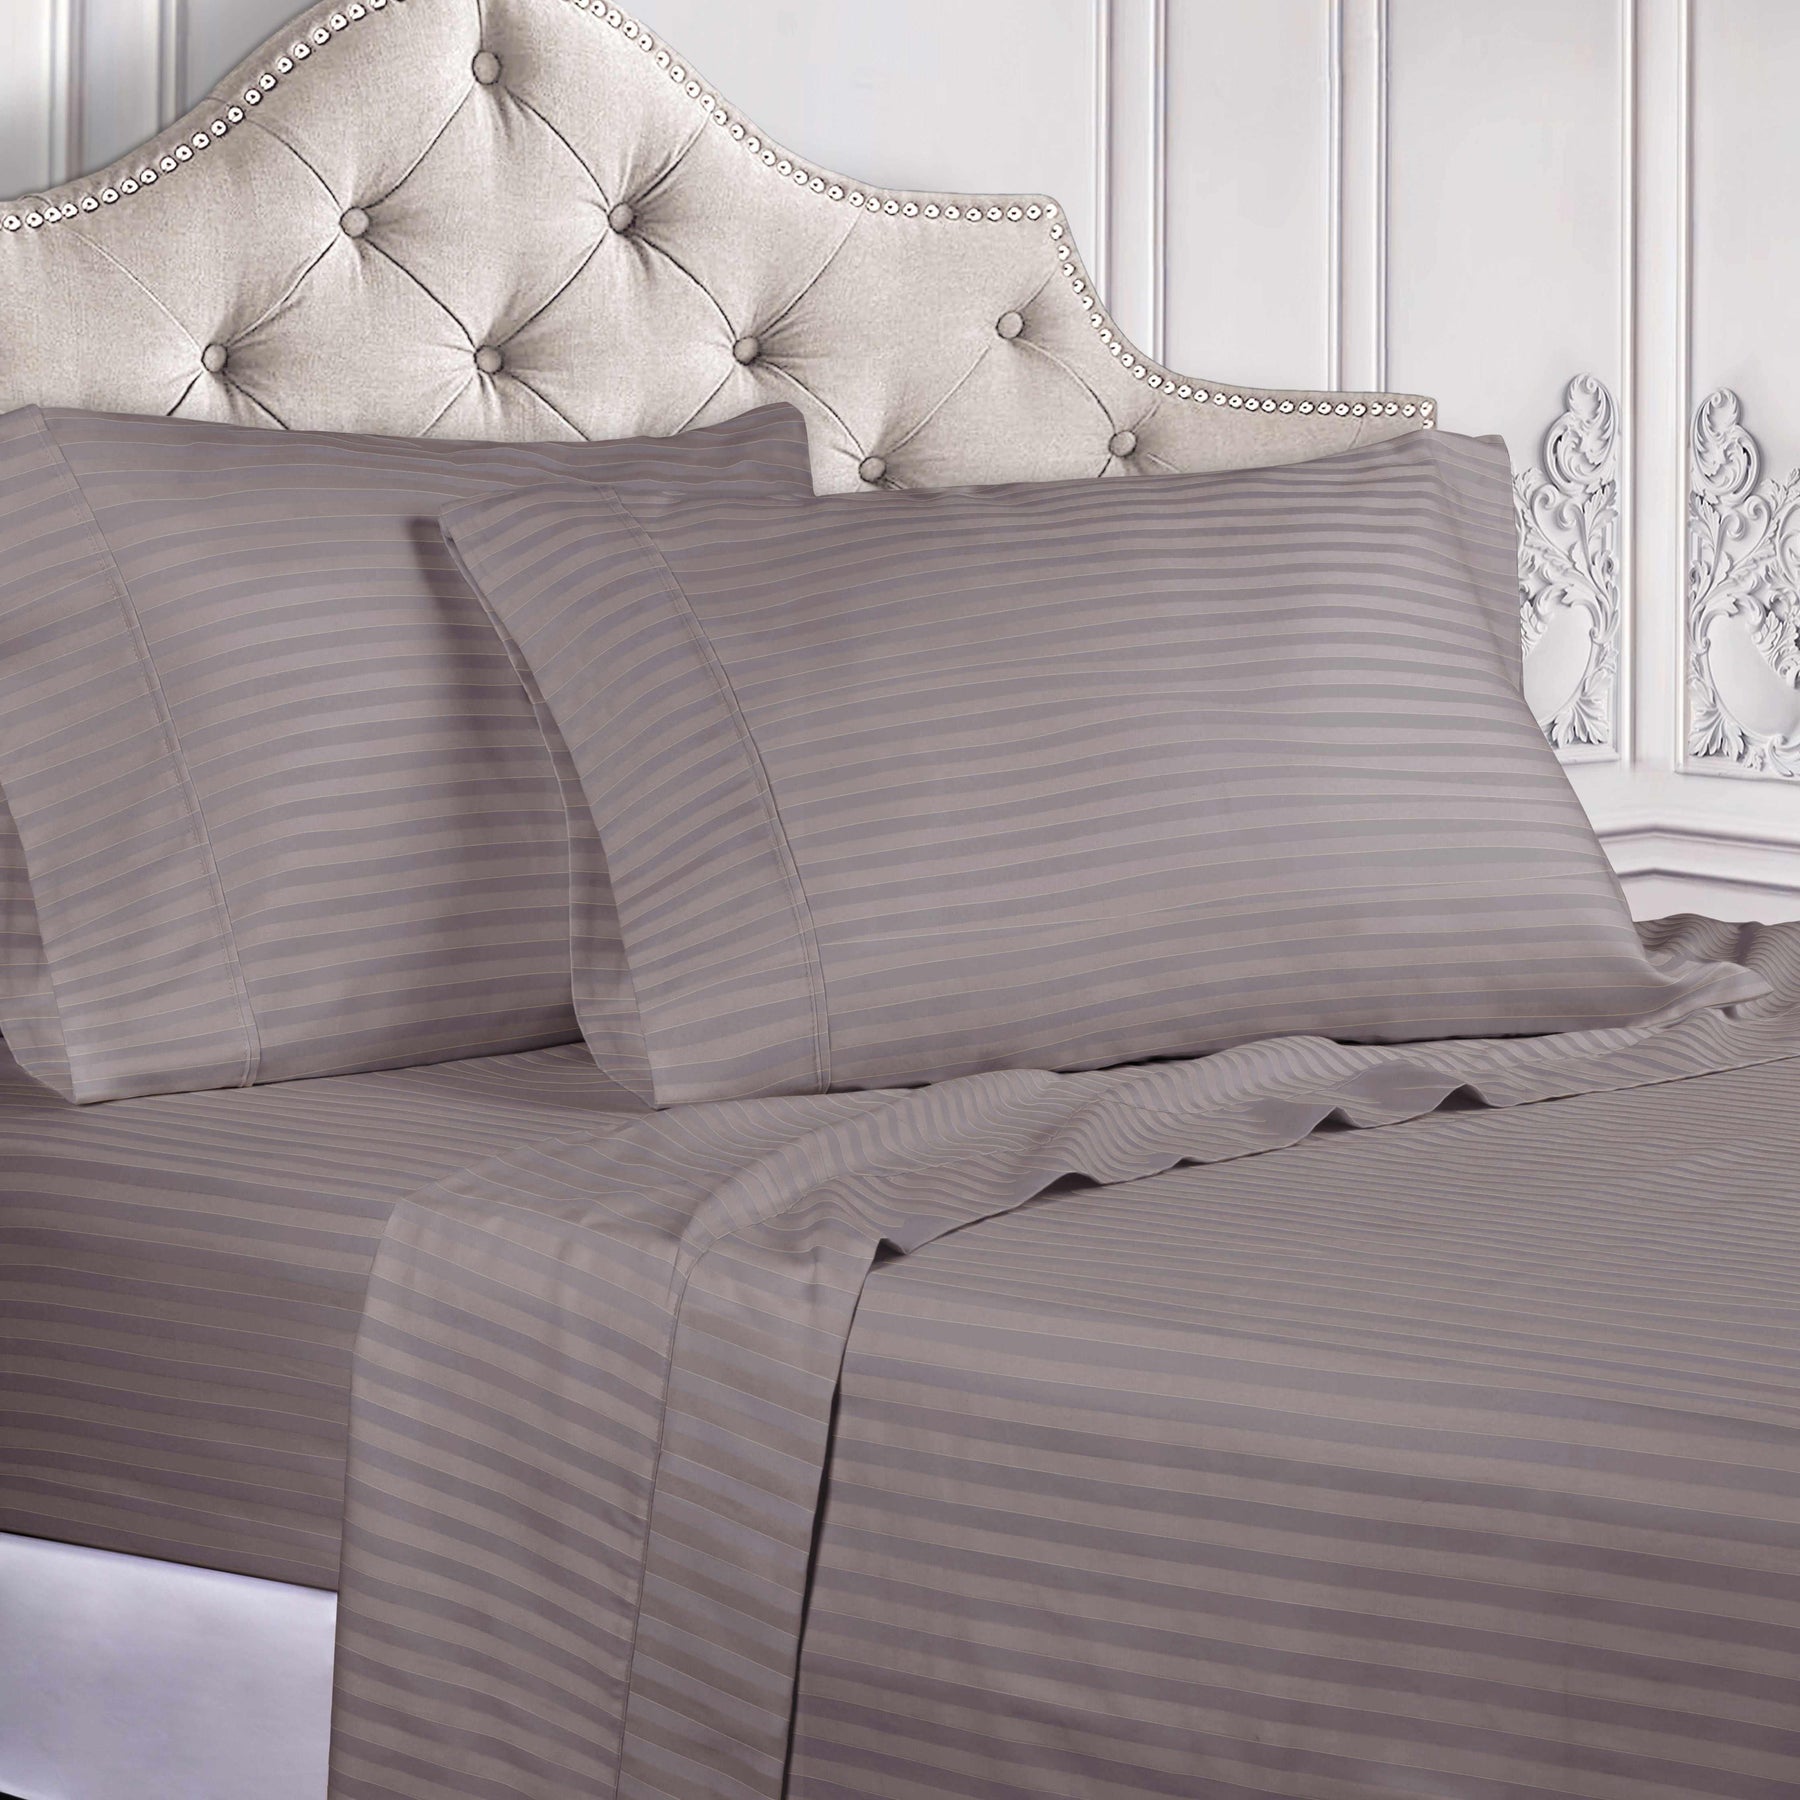 Superior 300 Thread-Count Premium Egyptian Cotton Stripe Sheet Set - Grey